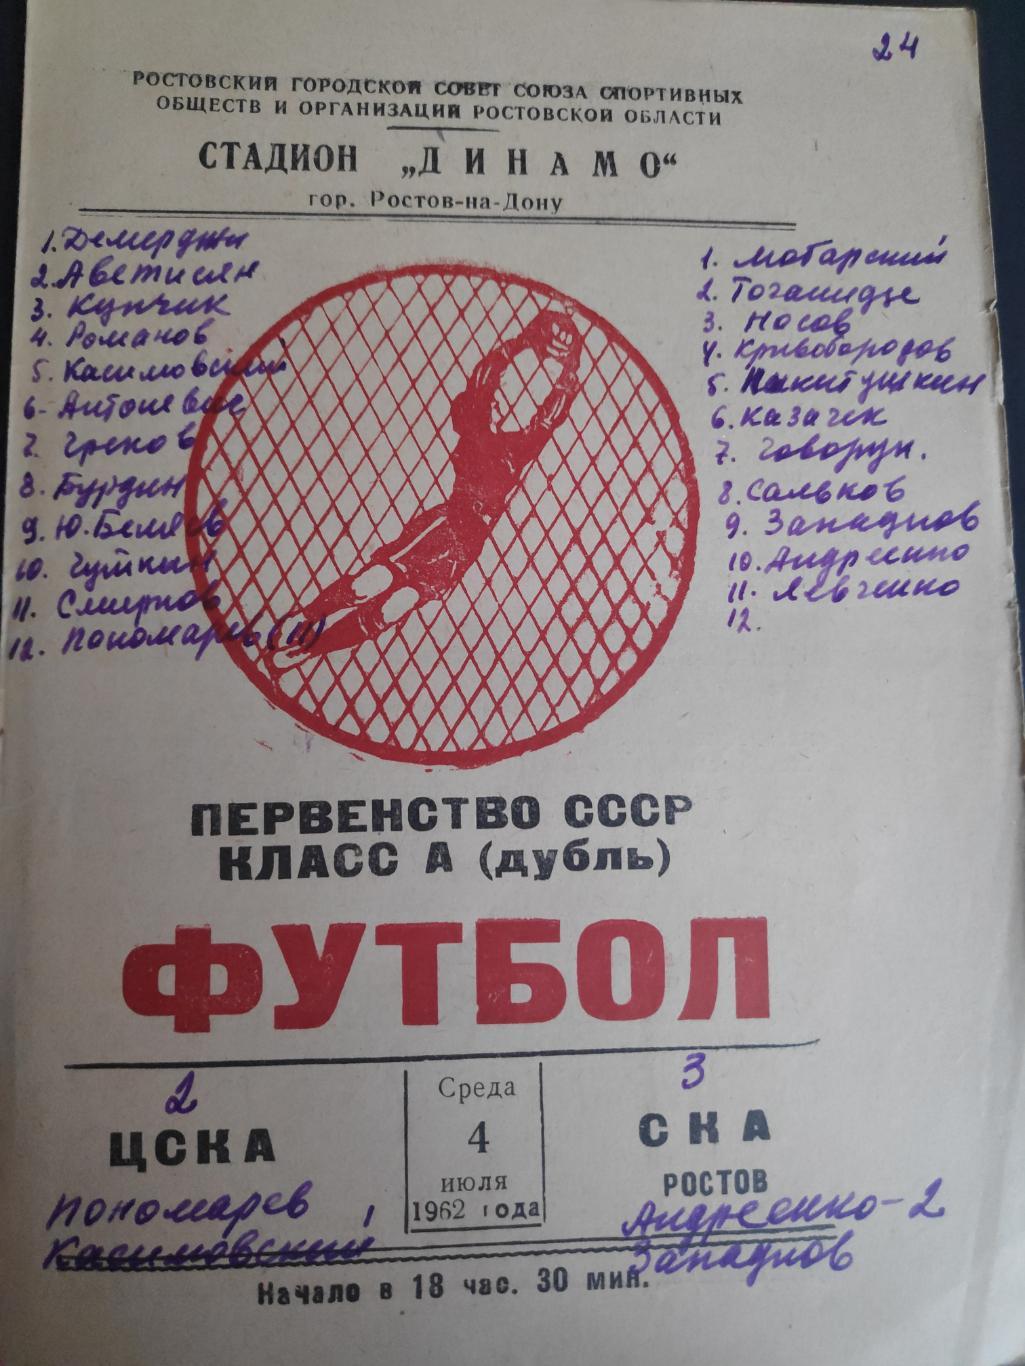 ЦСКА-СКА(Ростов) , 04.07.1962г.